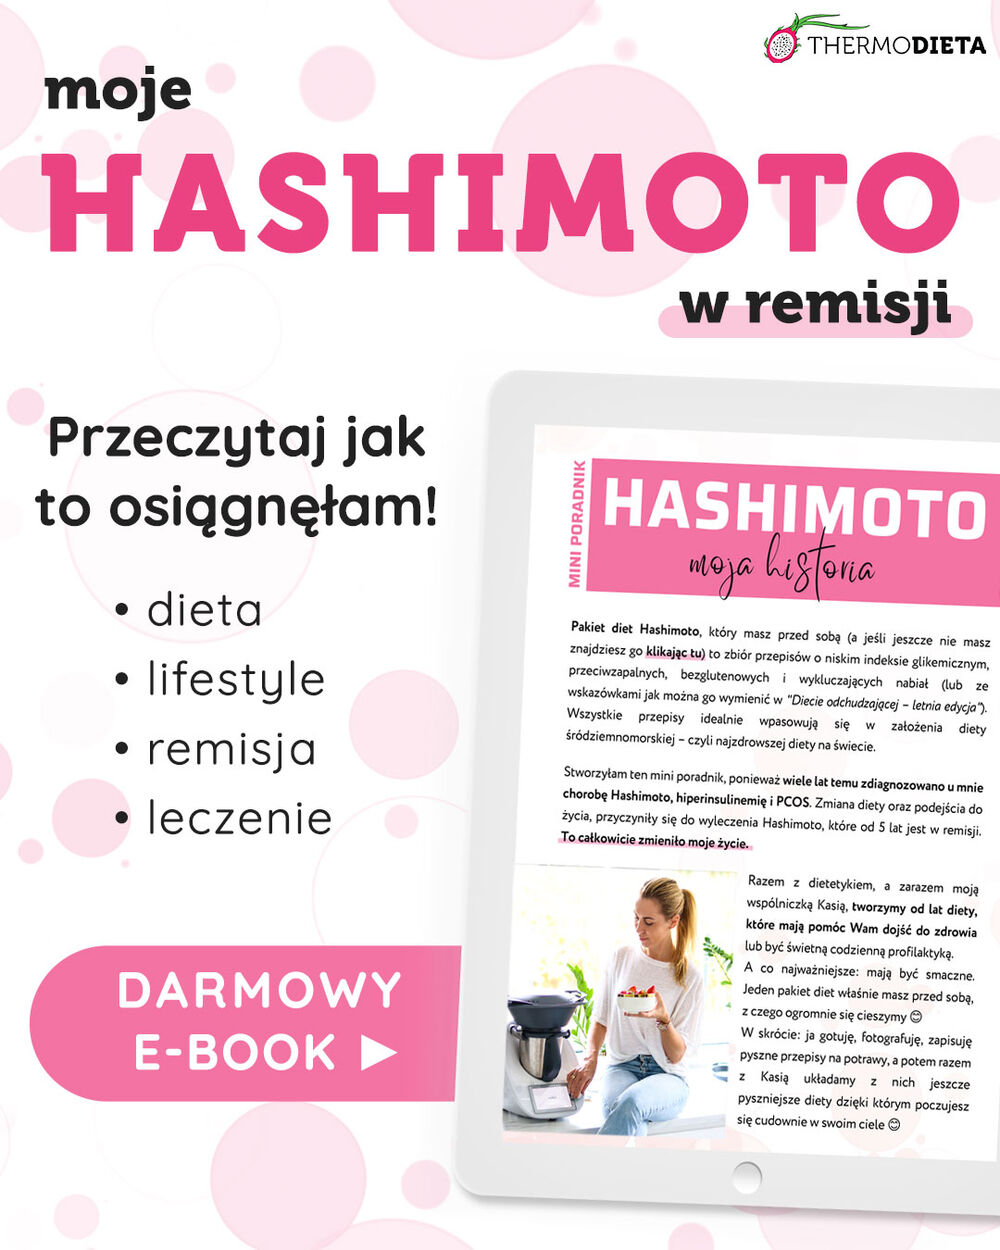 Hashimoto - moja historia. Mini poradnik